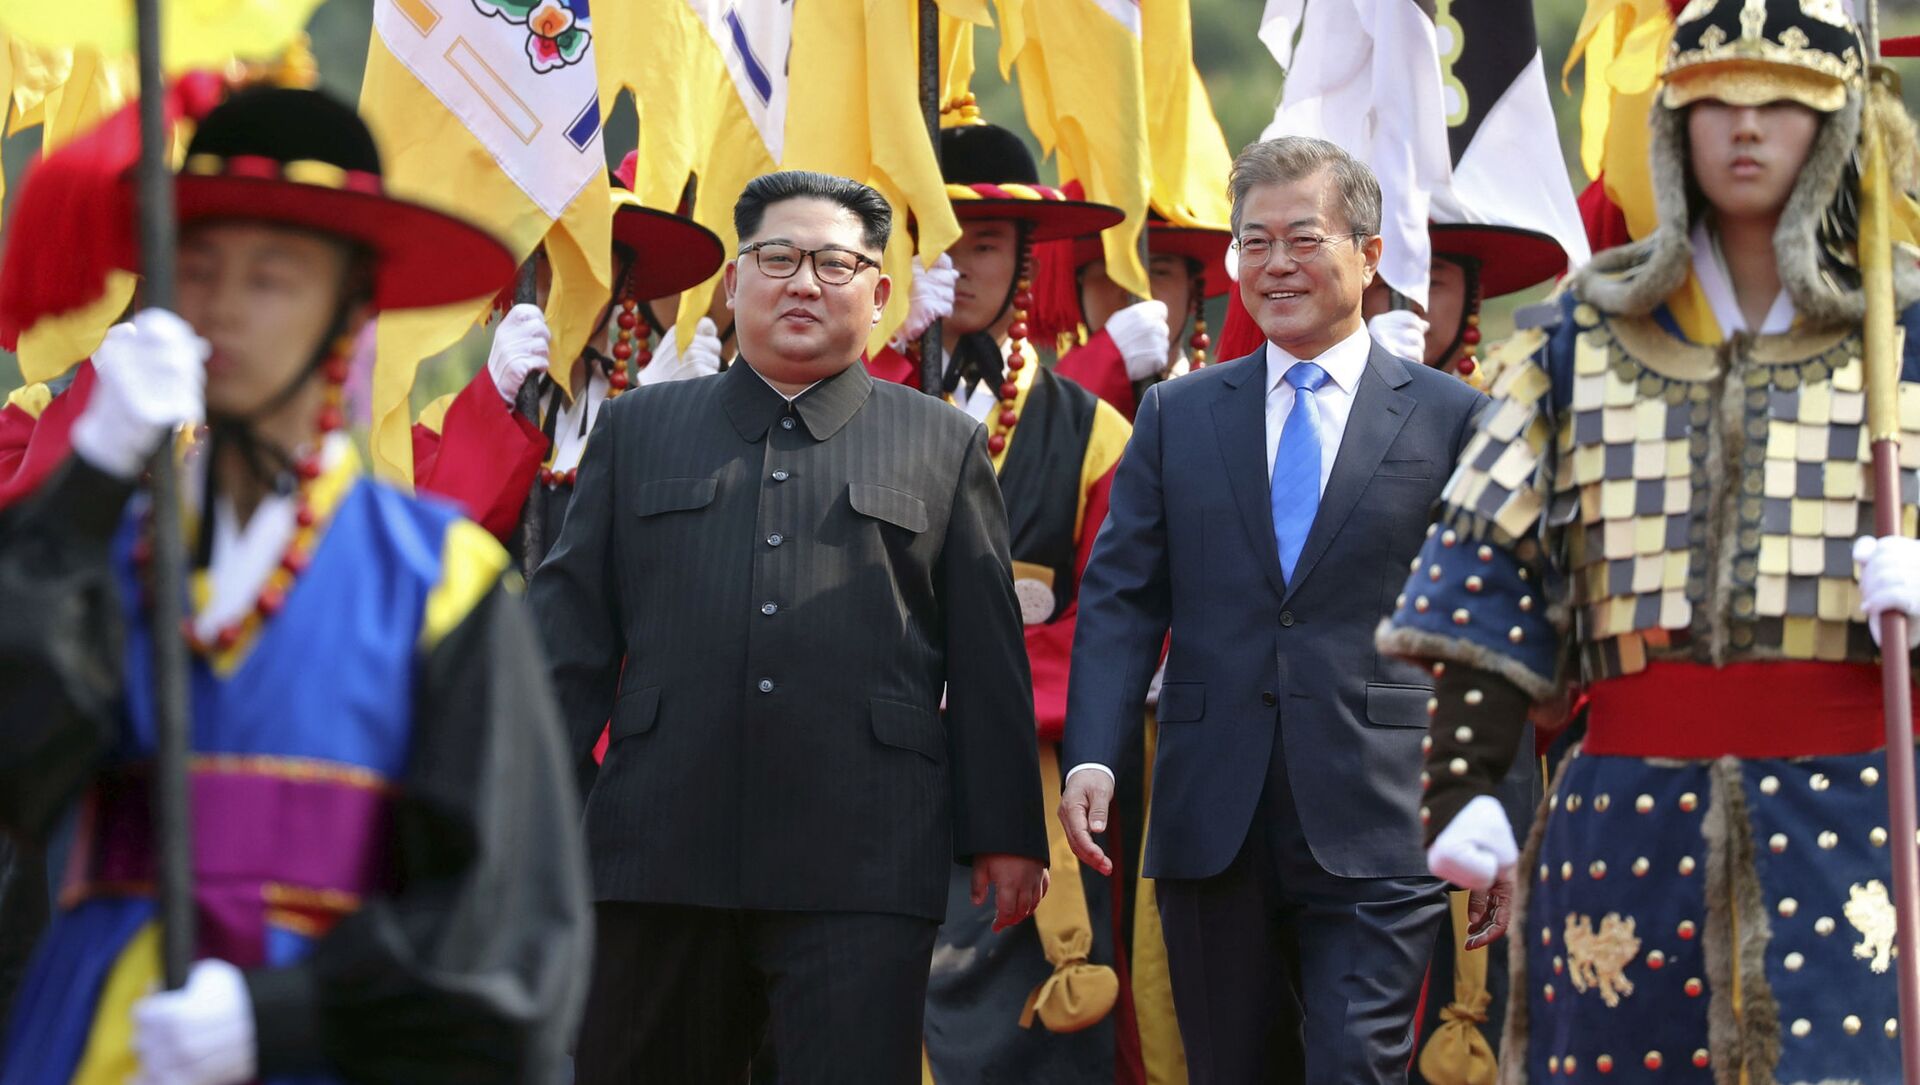  القمة التي جمعت الرئيس الكوري الجنوبي مون جيه إن، والزعيم الكوري الشمالي كيم جونغ أون، الجمعة، 27 أبريل/نيسان 2018 - سبوتنيك عربي, 1920, 25.10.2021